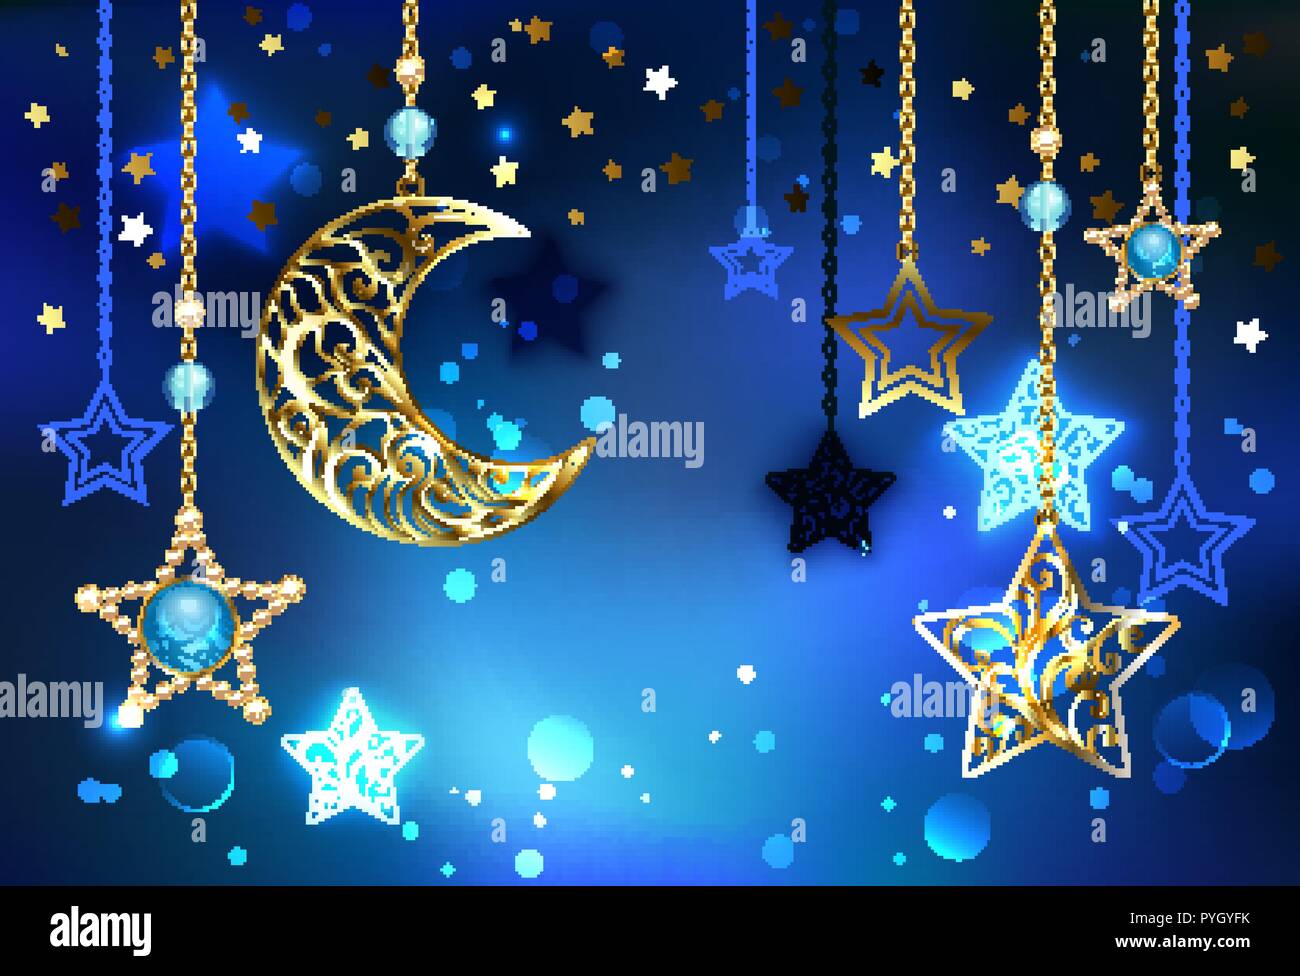 Gold, Jewel Crescent mit Sekt, wertvolle Sterne hängen an goldene Ketten auf leuchtenden blauen Hintergrund. Stock Vektor